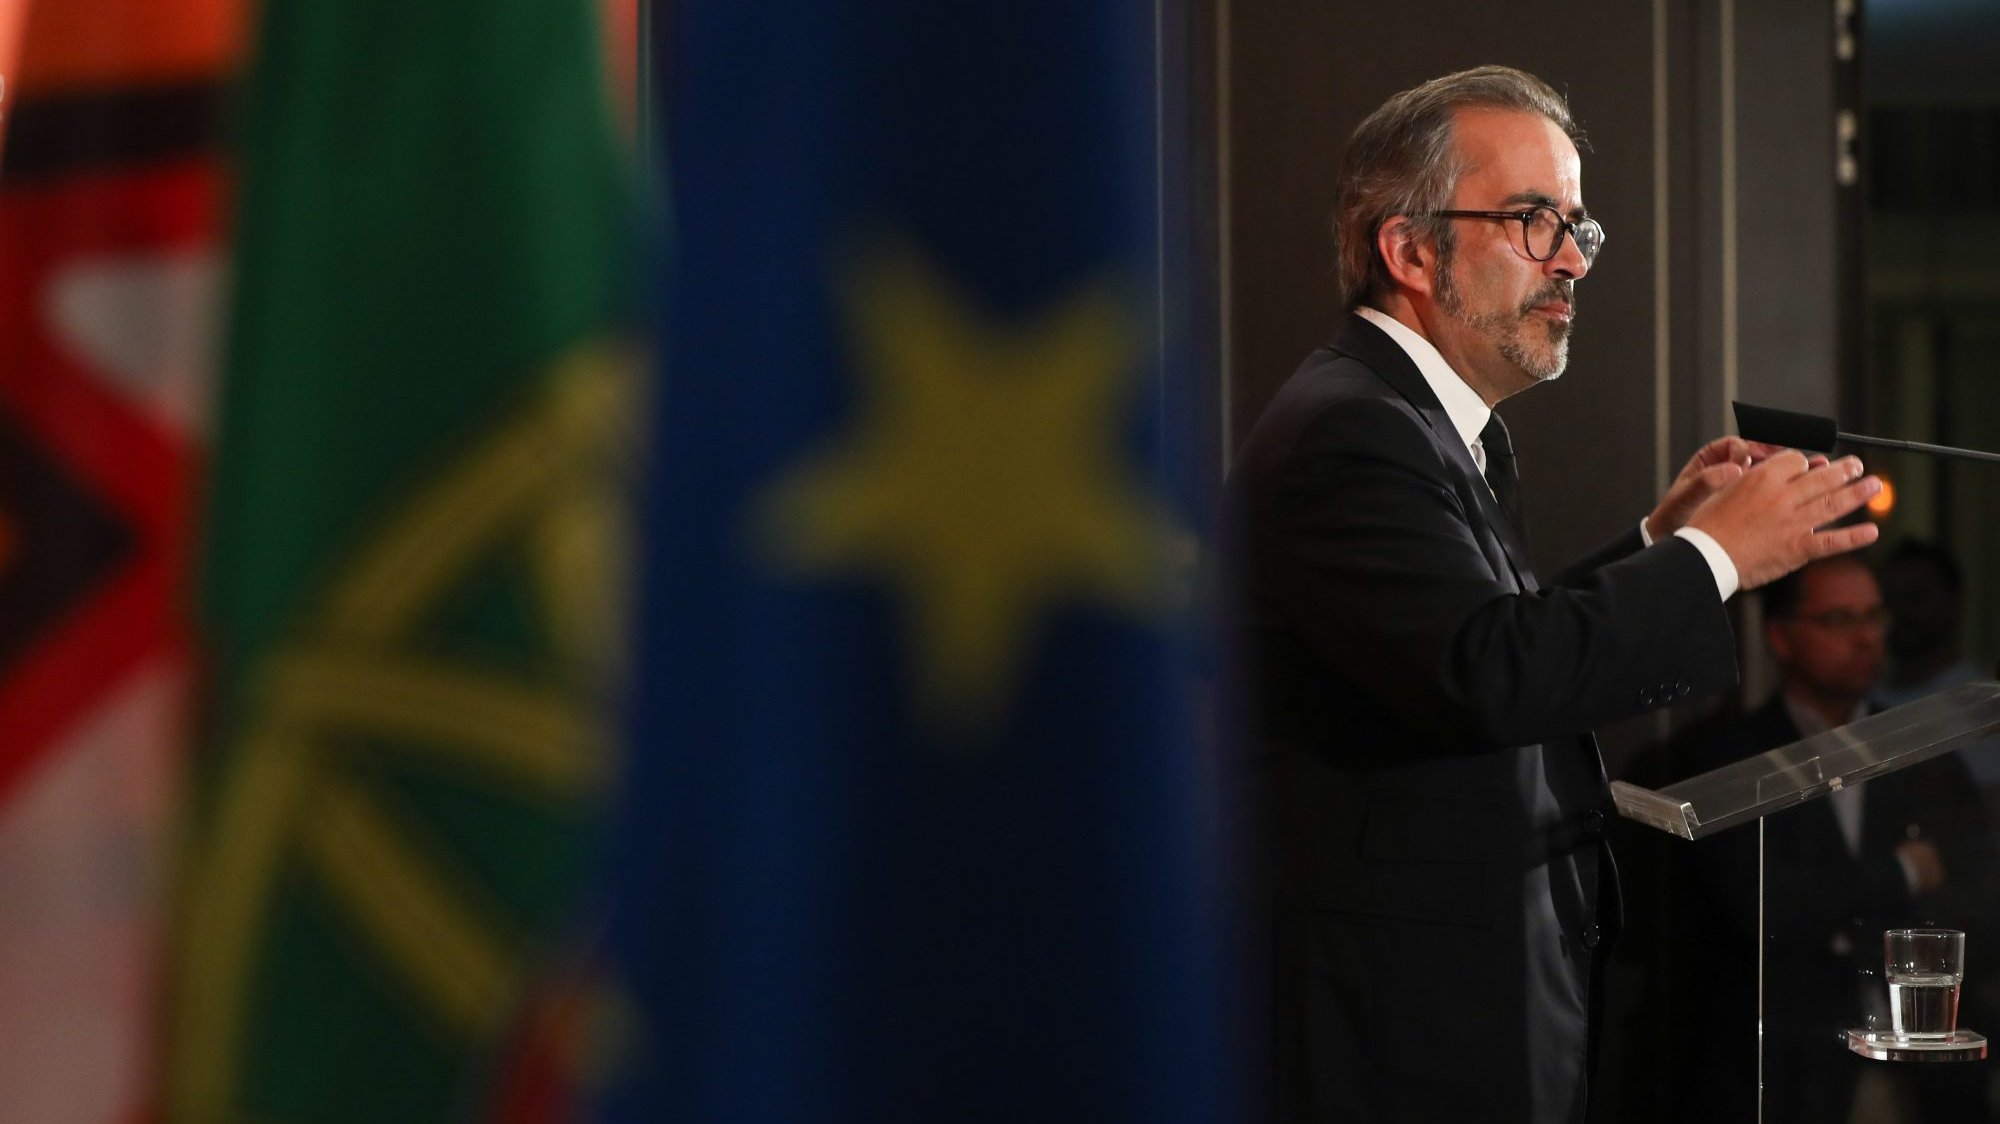 O eurodeputado português inquiriu ainda sobre as ajudas concretas disponibilizadas pela UE ao país